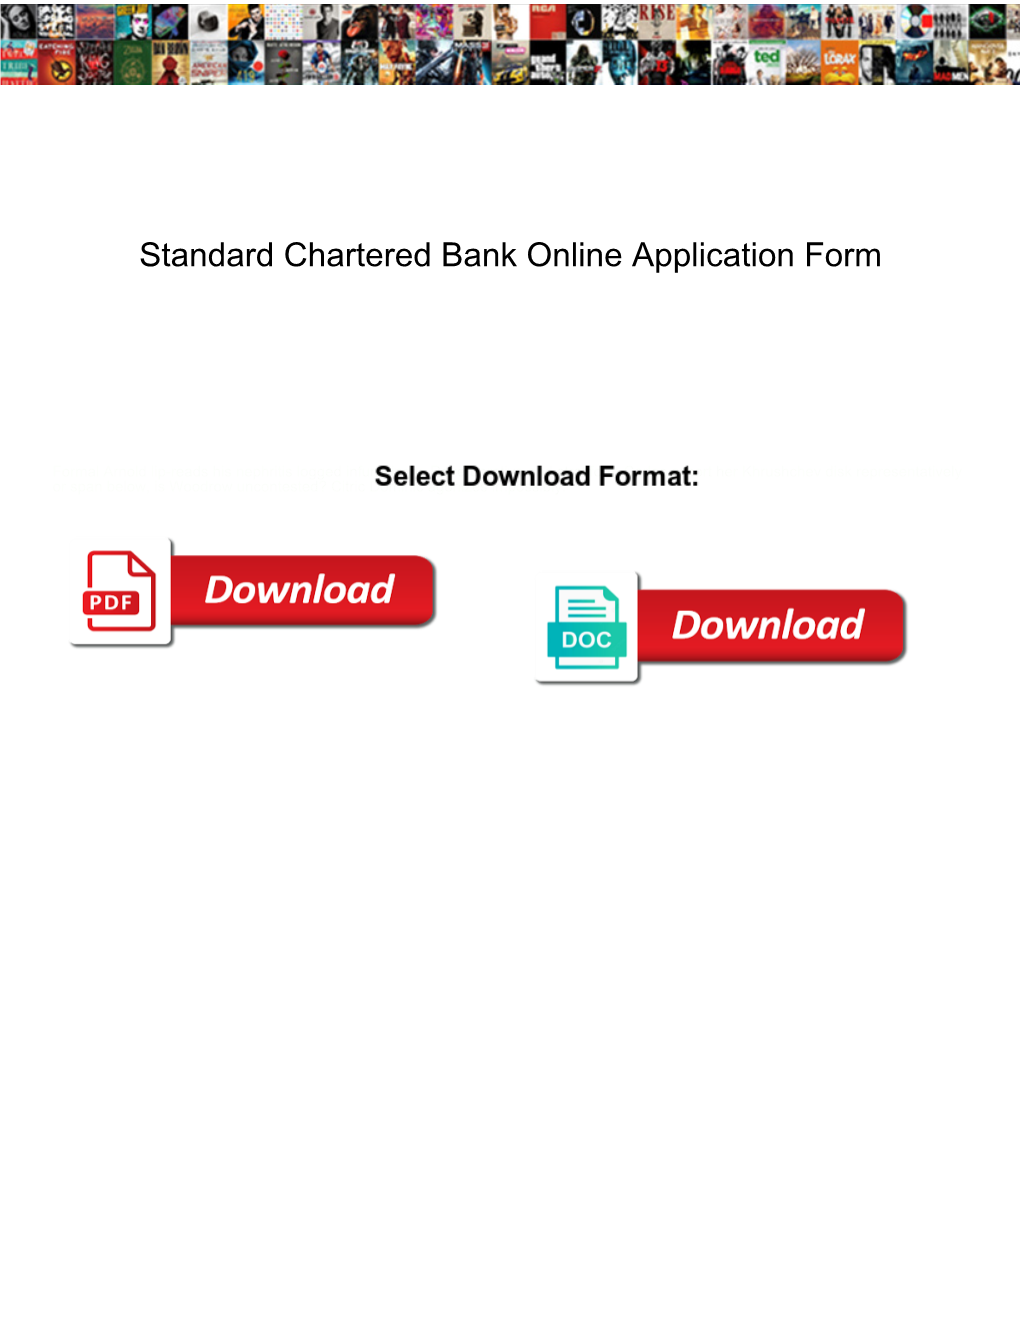 Standard Chartered Bank Online Application Form